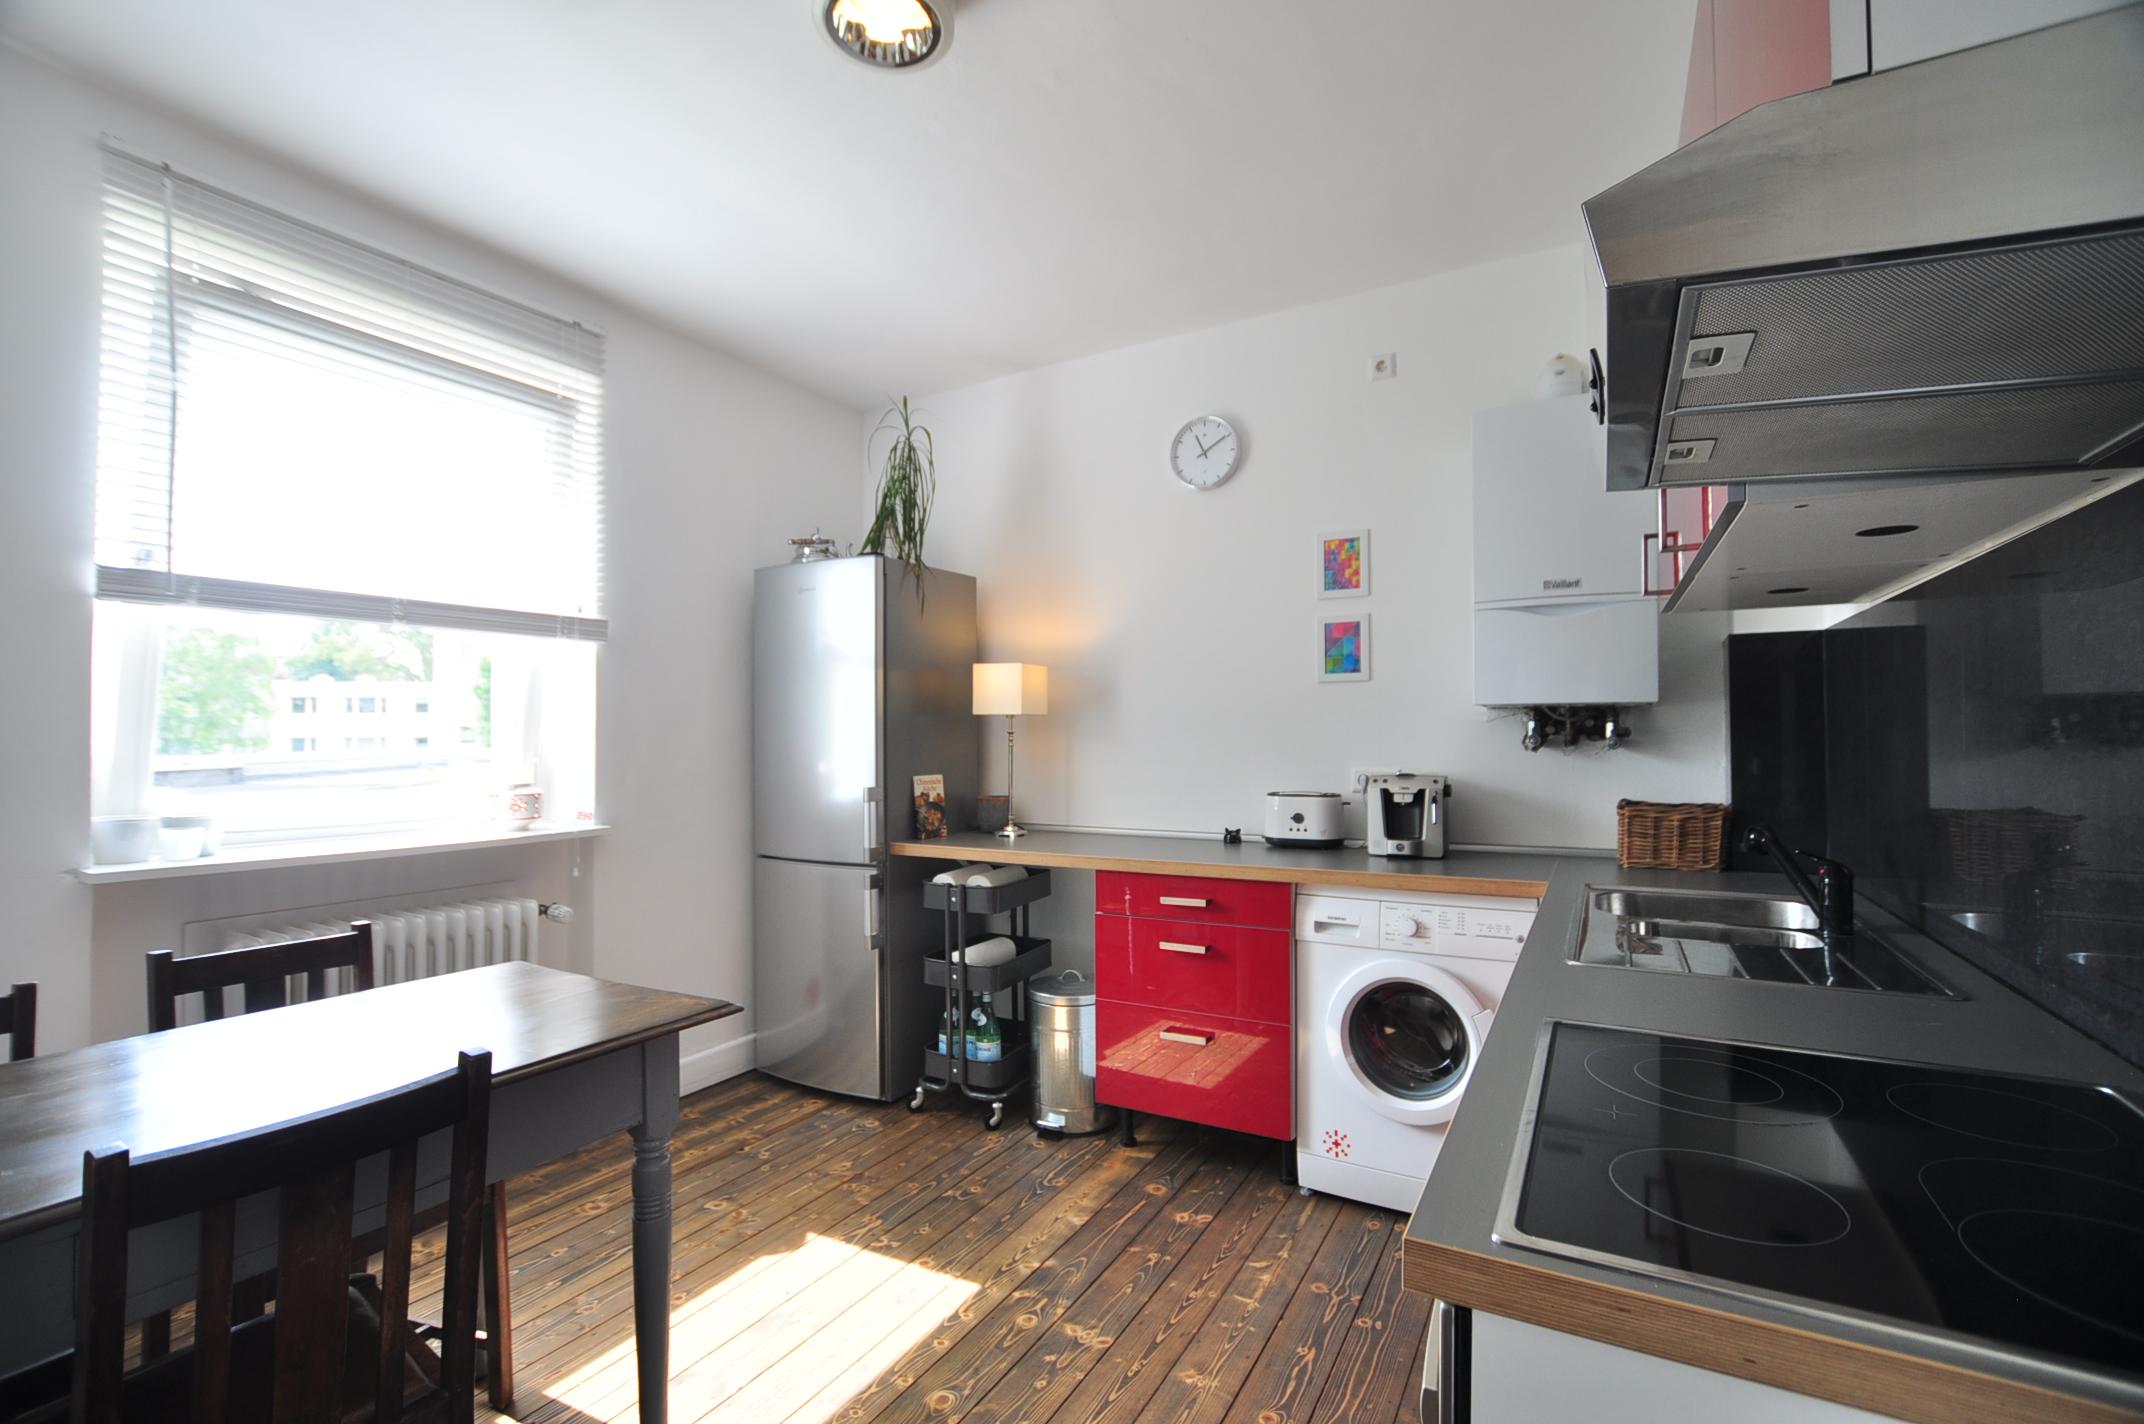 Küche _ möblierte Wohnung #bodenbelag #küche ©e-rent Agentur / Alina Edelstein